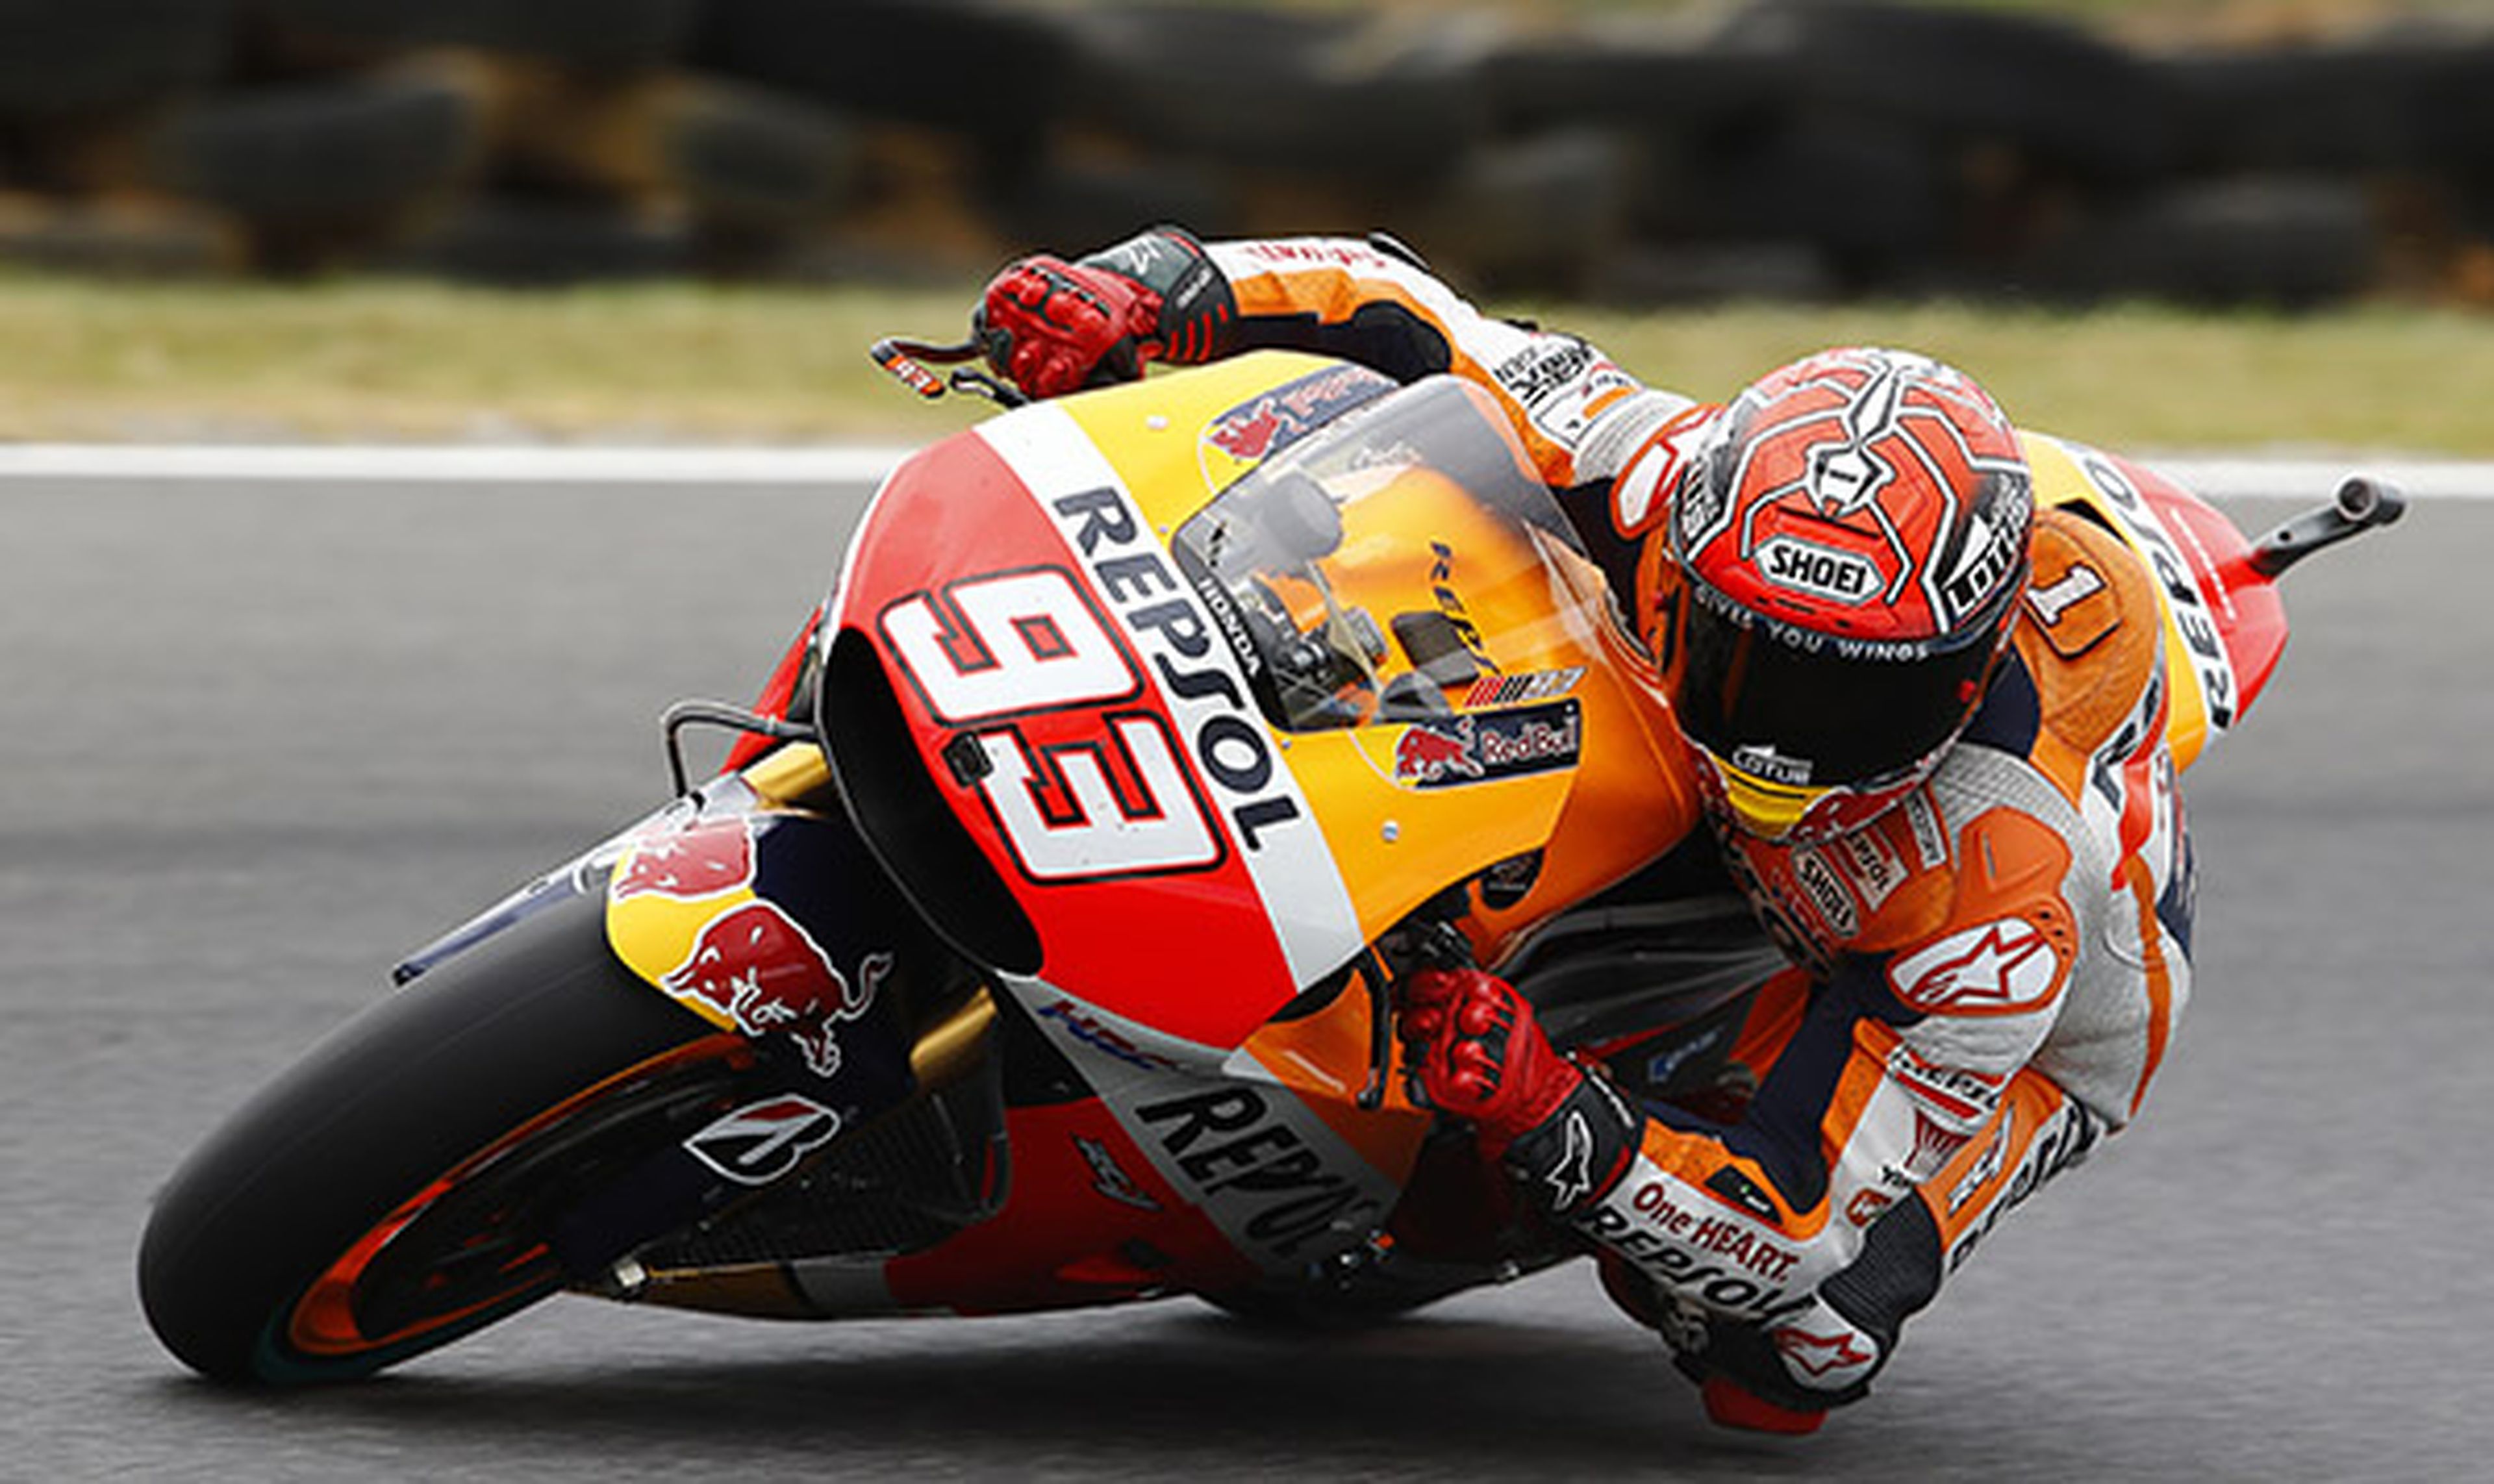 Clasificación MotoGP Phillip Island 2015: Márquez se sale